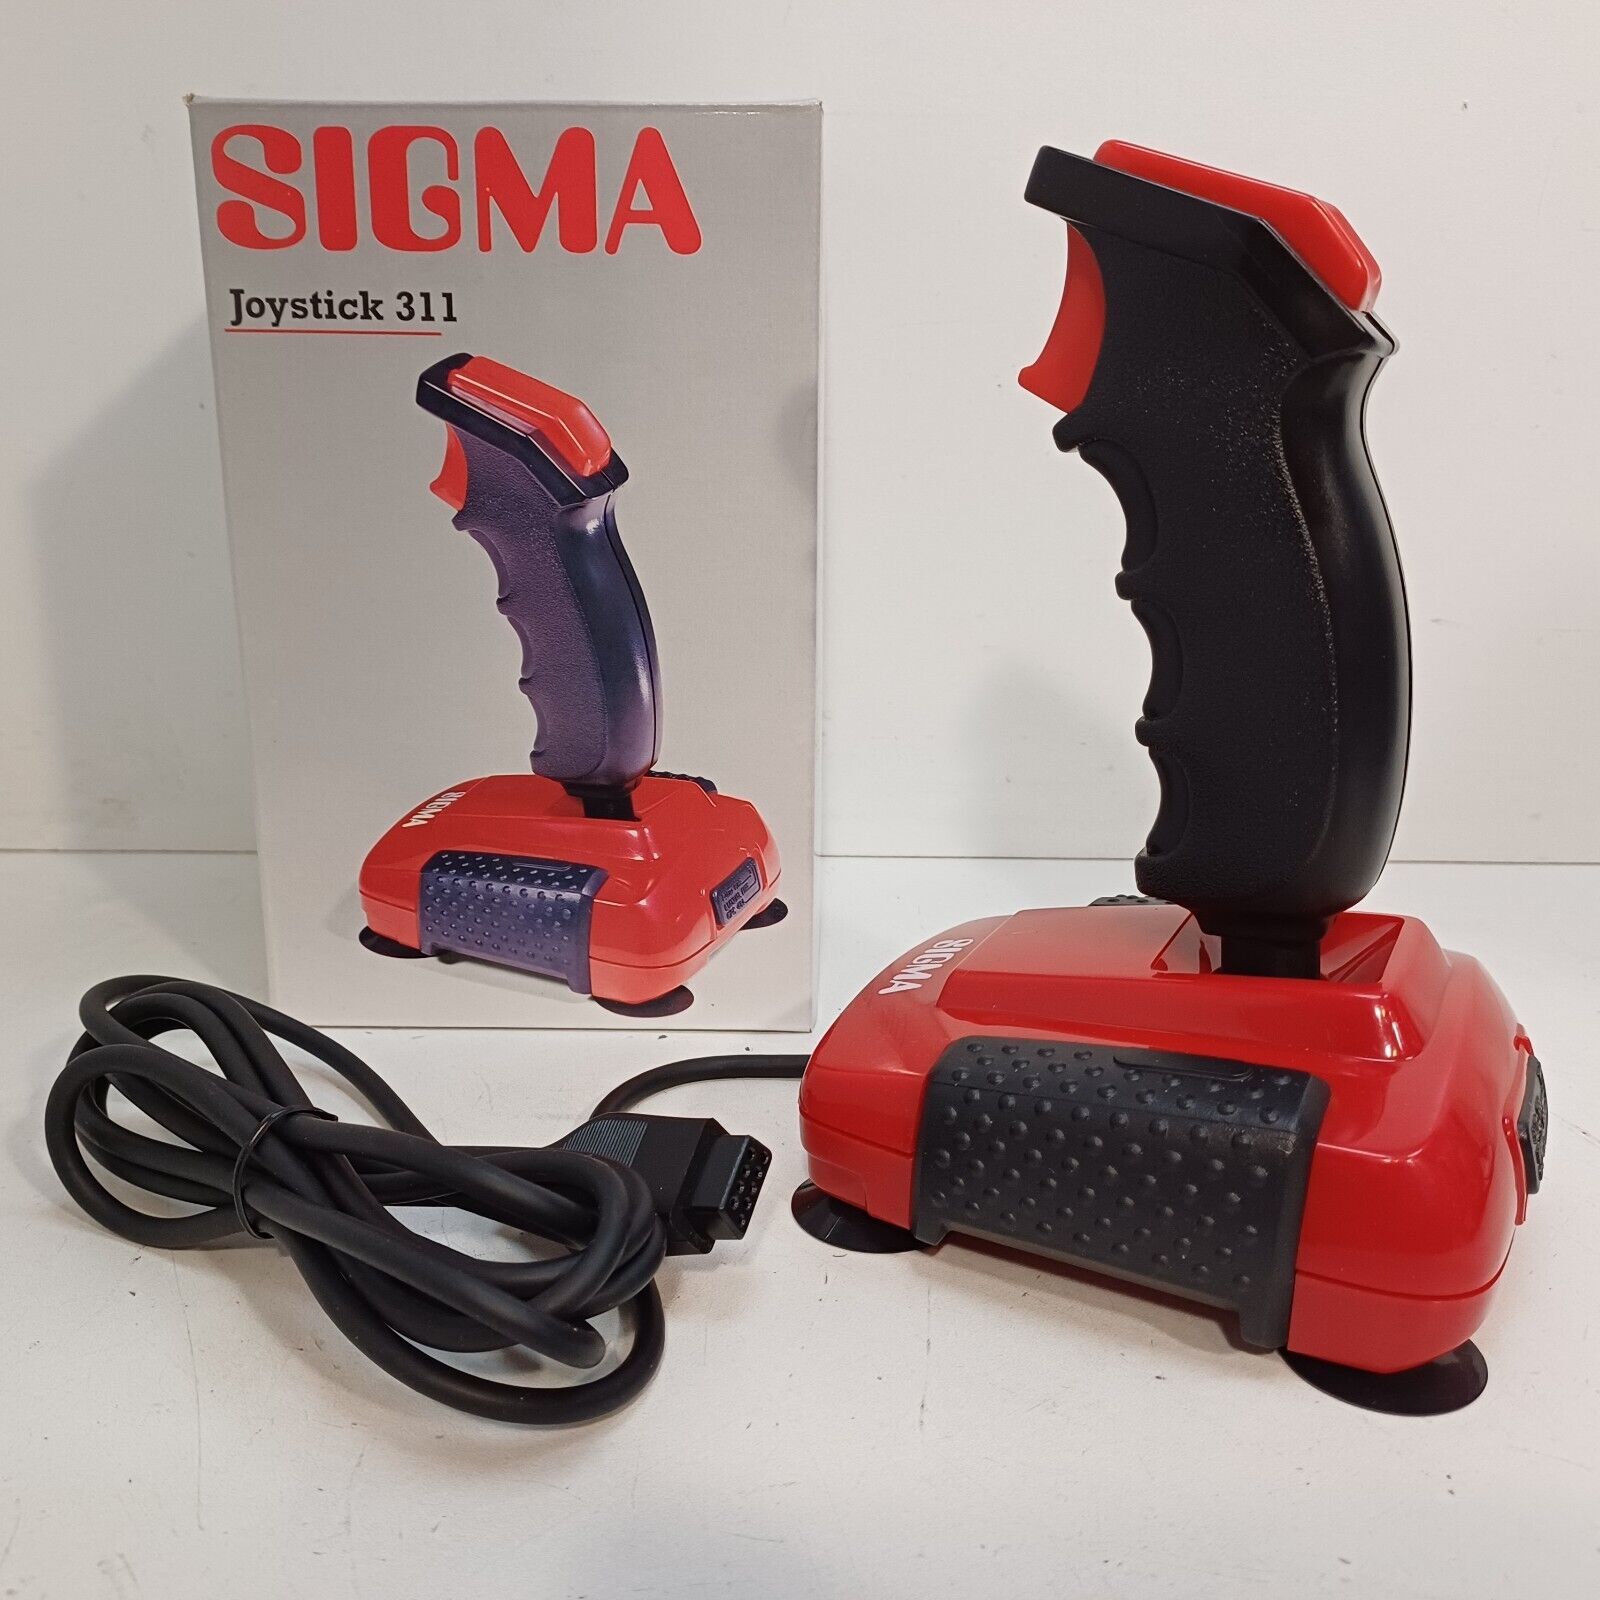 Sigma 311 Joystick for Amiga 500,1000,2000 Micro-switches,Autofire. NEW-IN-BOX 